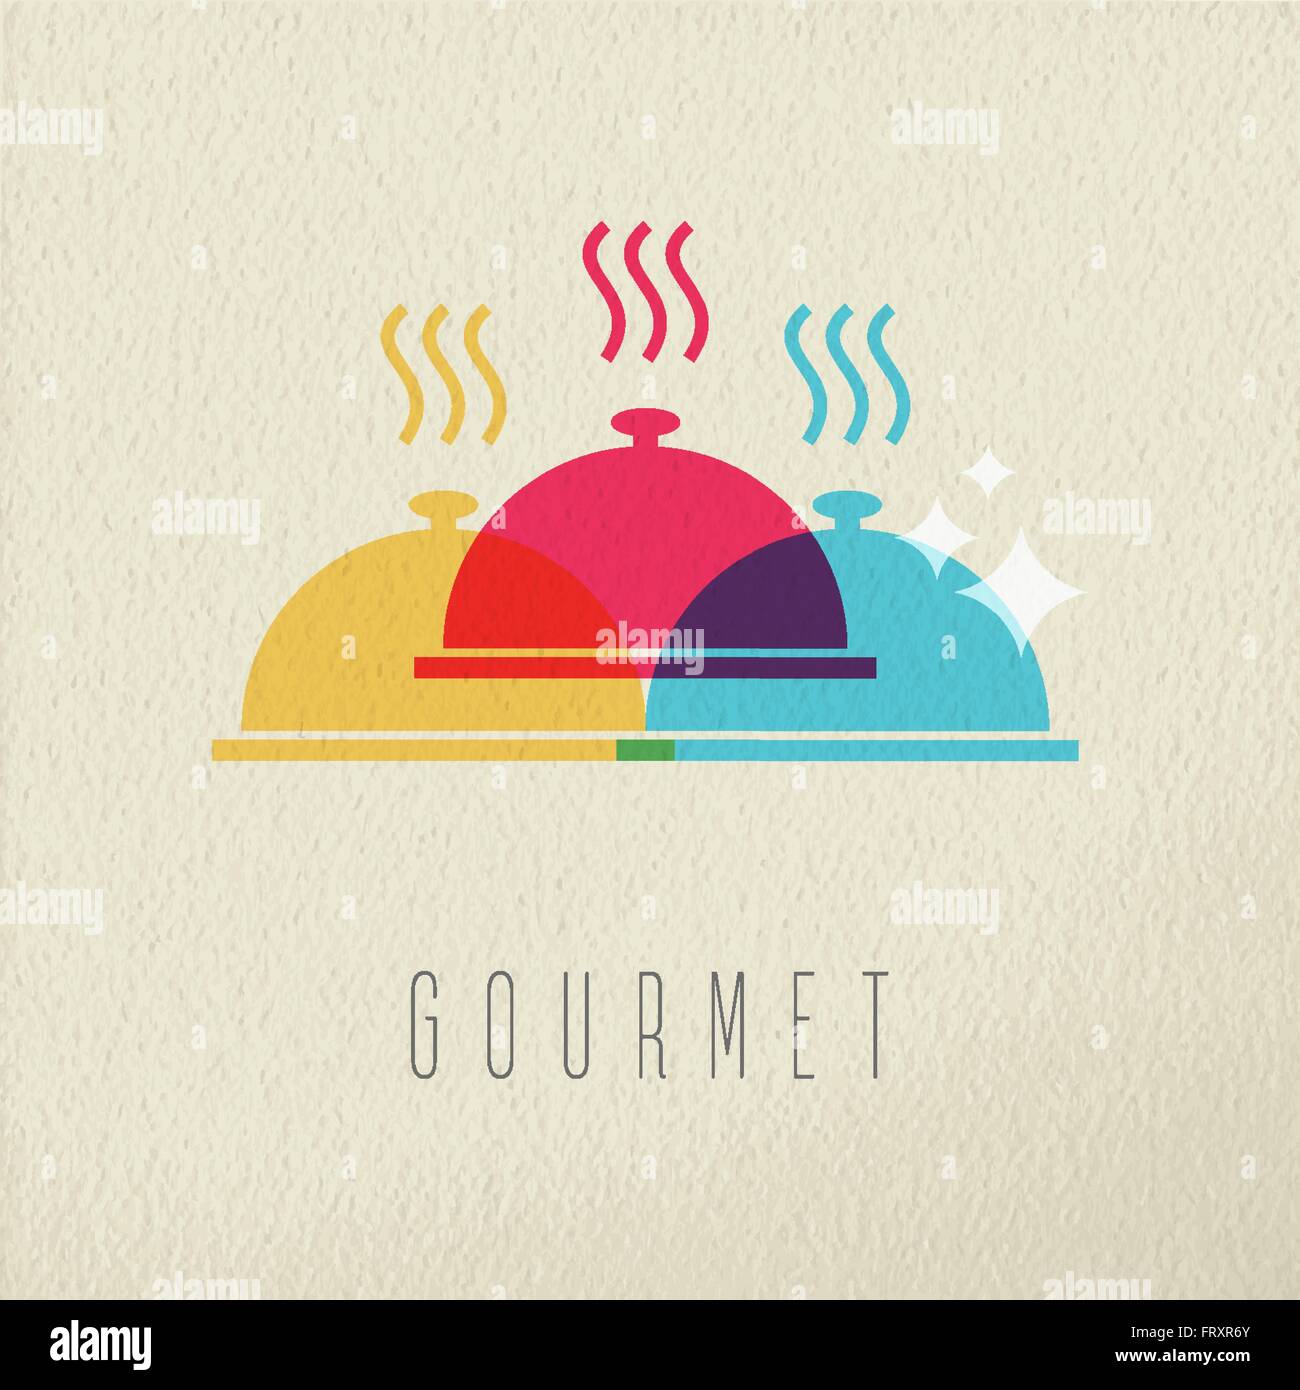 Cucina gourmet concetto, ristorante hot food con piastra di copertura in stile a colori su sfondo di texture. EPS10 vettore. Illustrazione Vettoriale